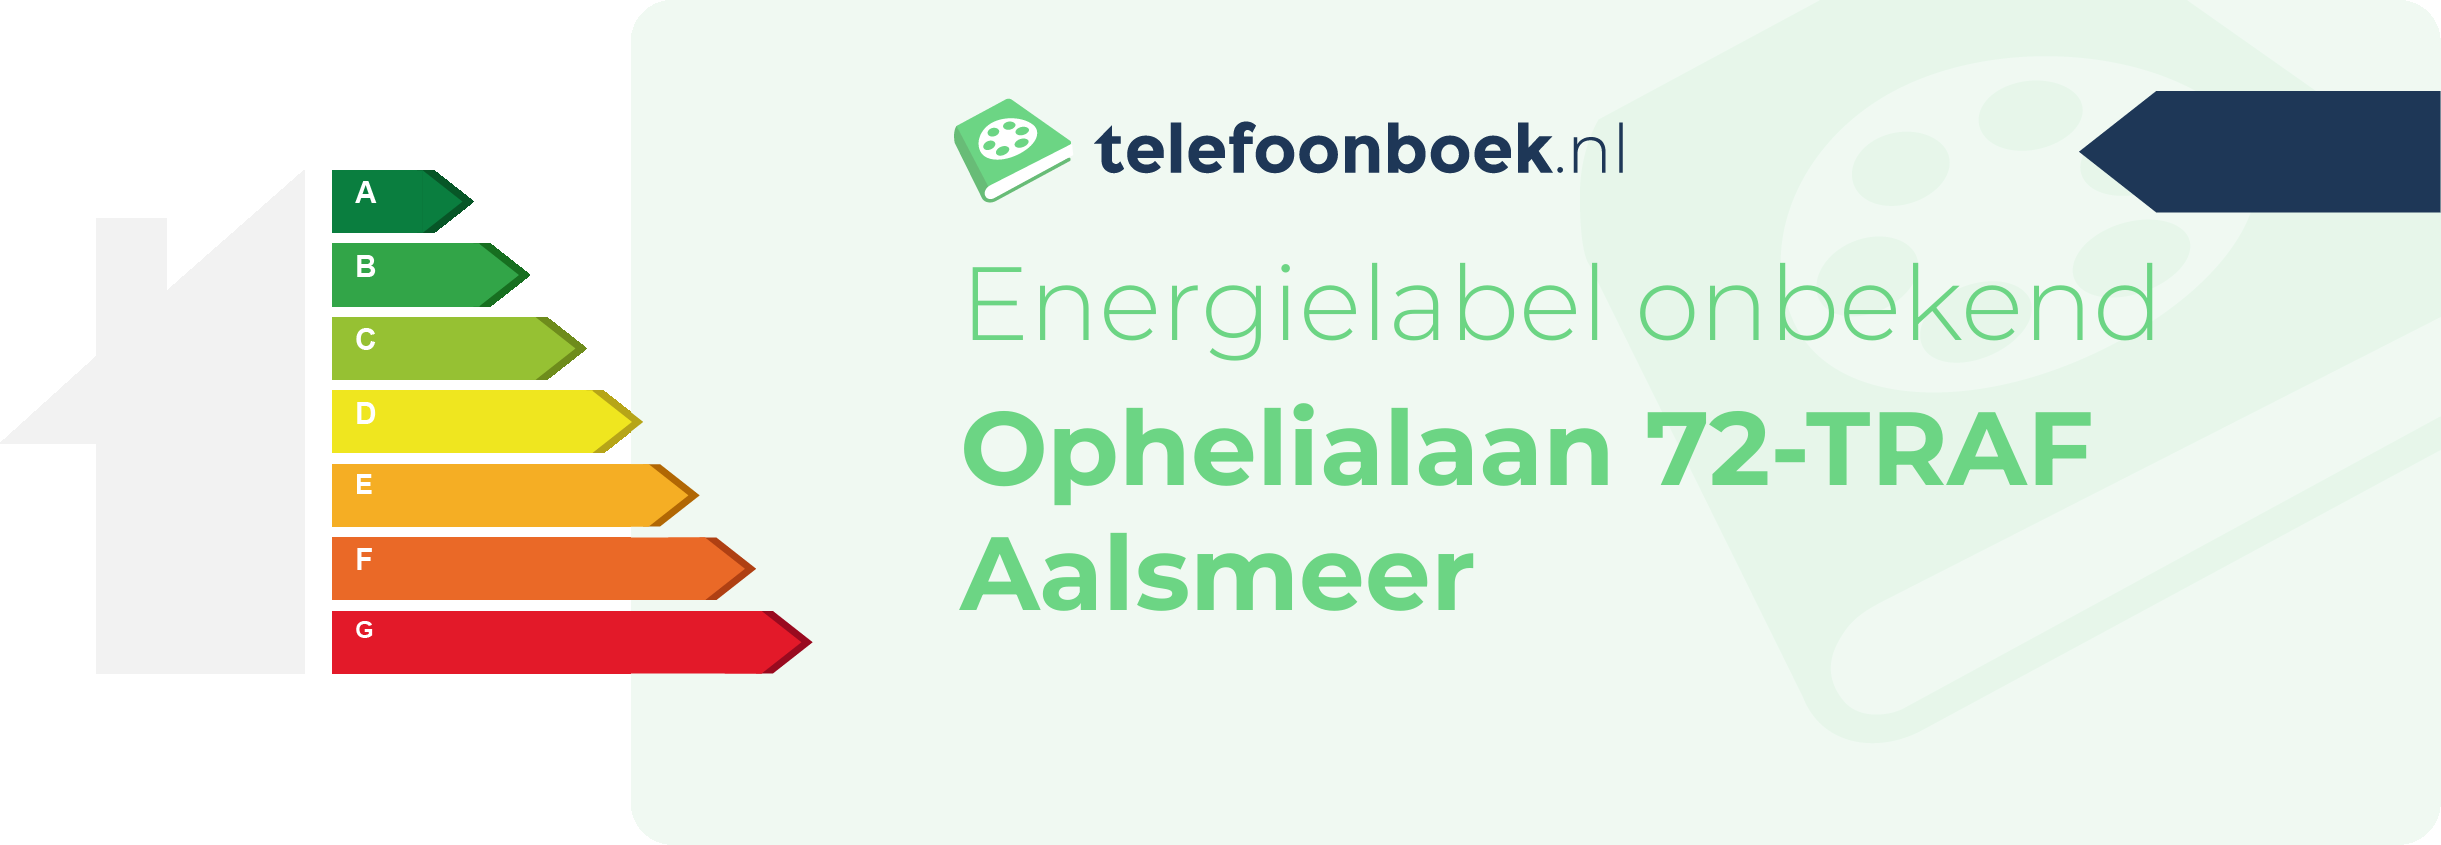 Energielabel Ophelialaan 72-TRAF Aalsmeer